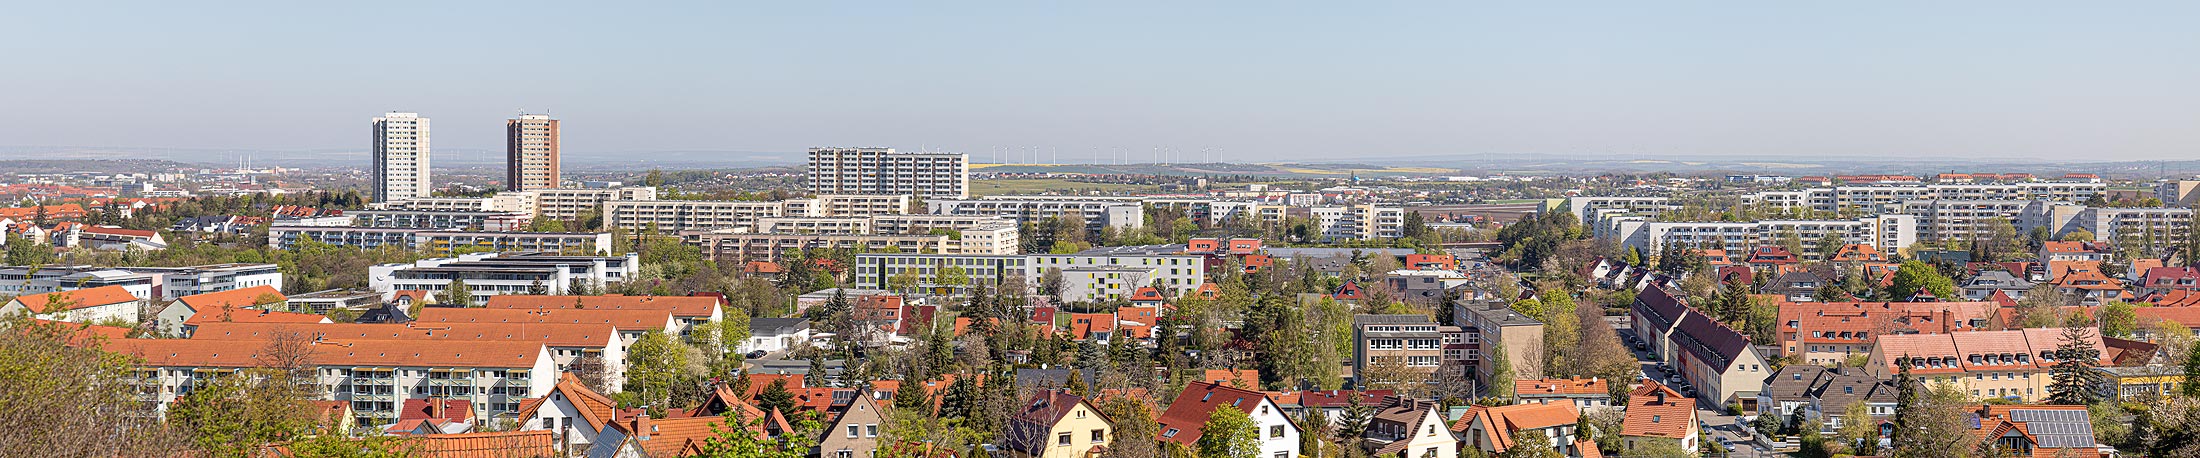 Panoramablick auf den kleinen Herrenberg